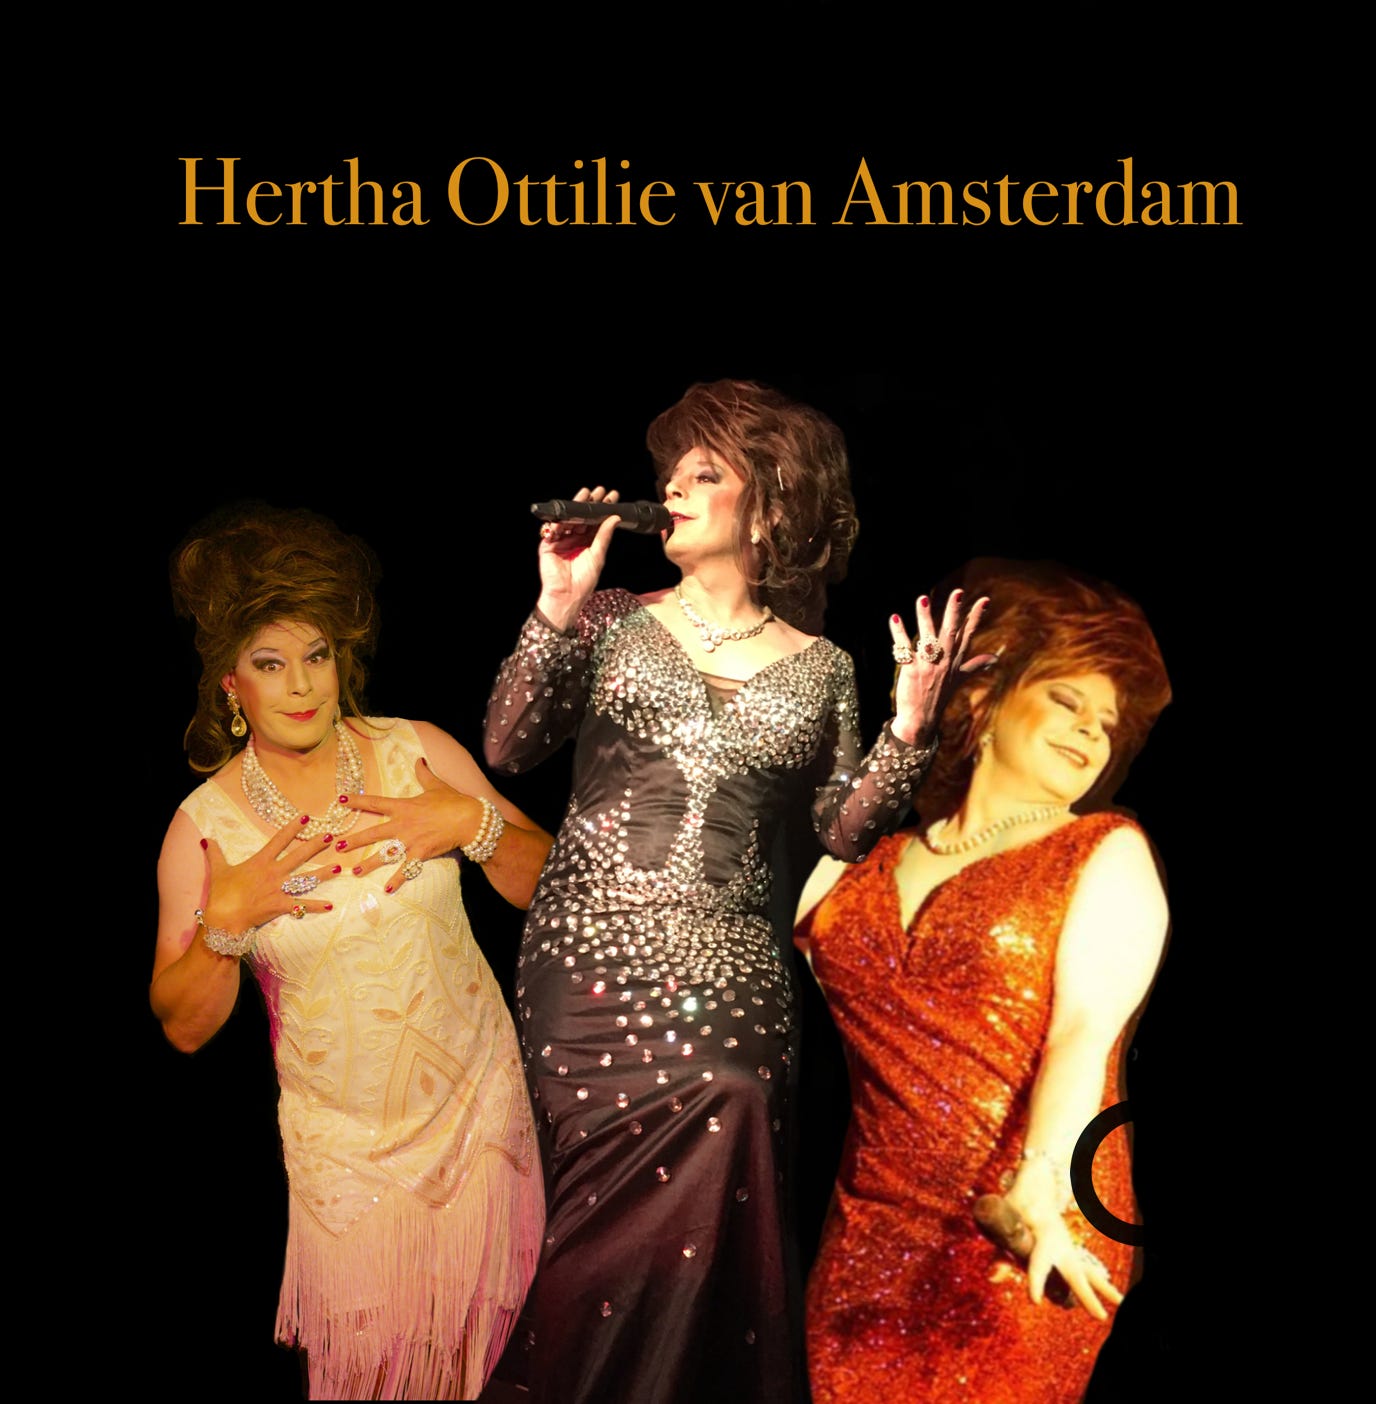 Hertha Ottilie van Amsterdam, die Travestieshow aus Lübeck und das Highlight für ihre Veranstaltung.